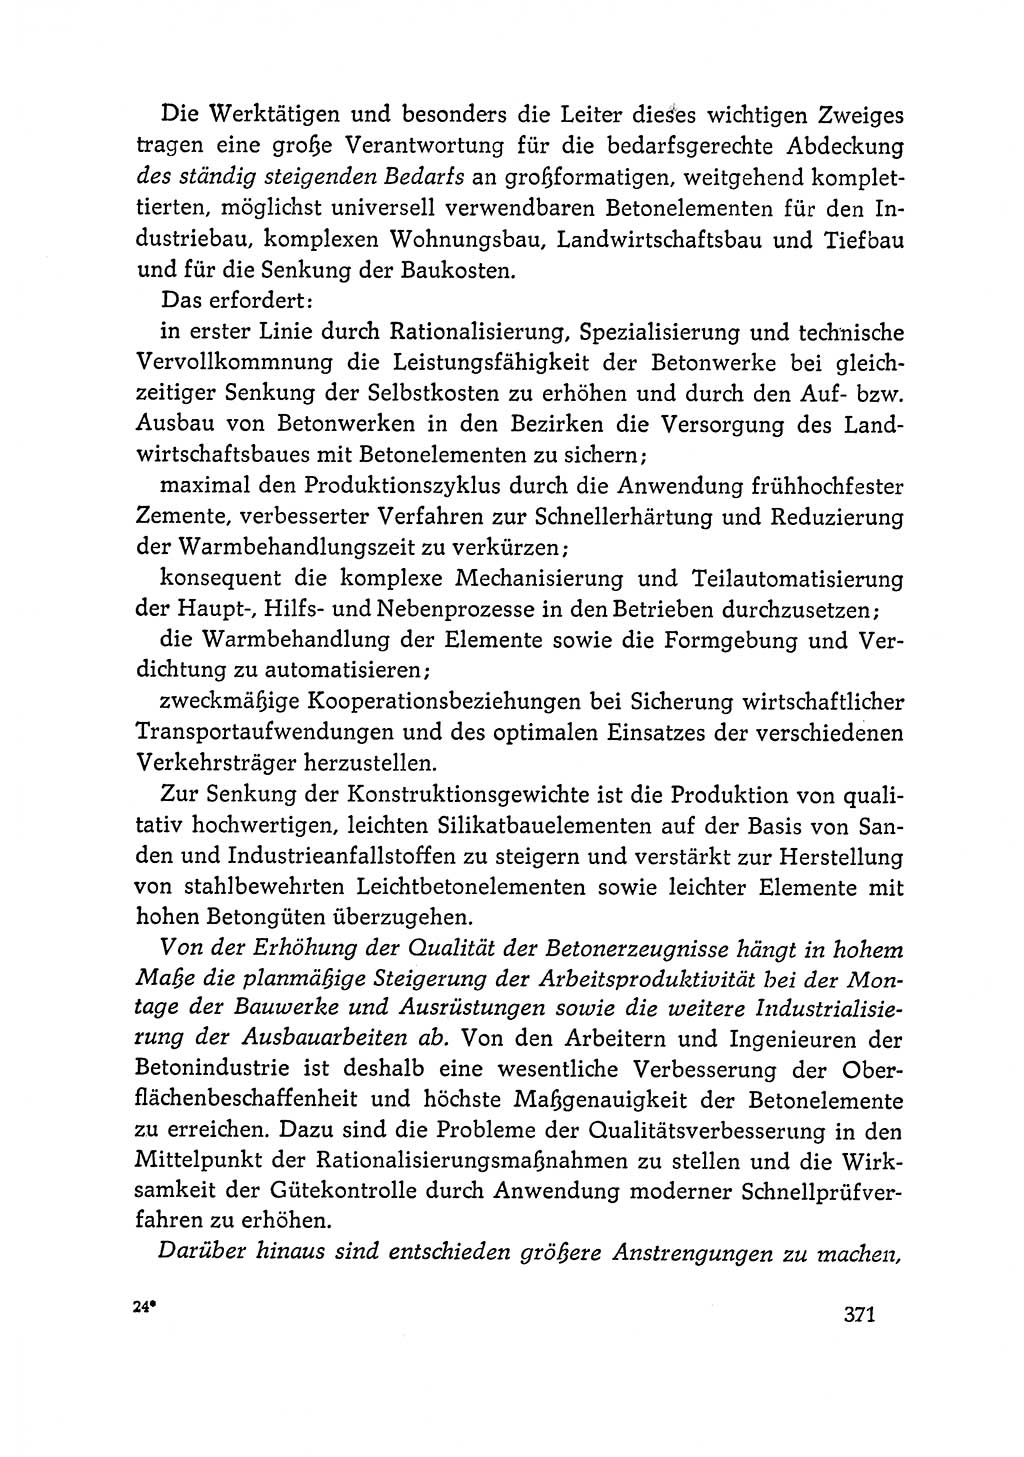 Dokumente der Sozialistischen Einheitspartei Deutschlands (SED) [Deutsche Demokratische Republik (DDR)] 1964-1965, Seite 371 (Dok. SED DDR 1964-1965, S. 371)